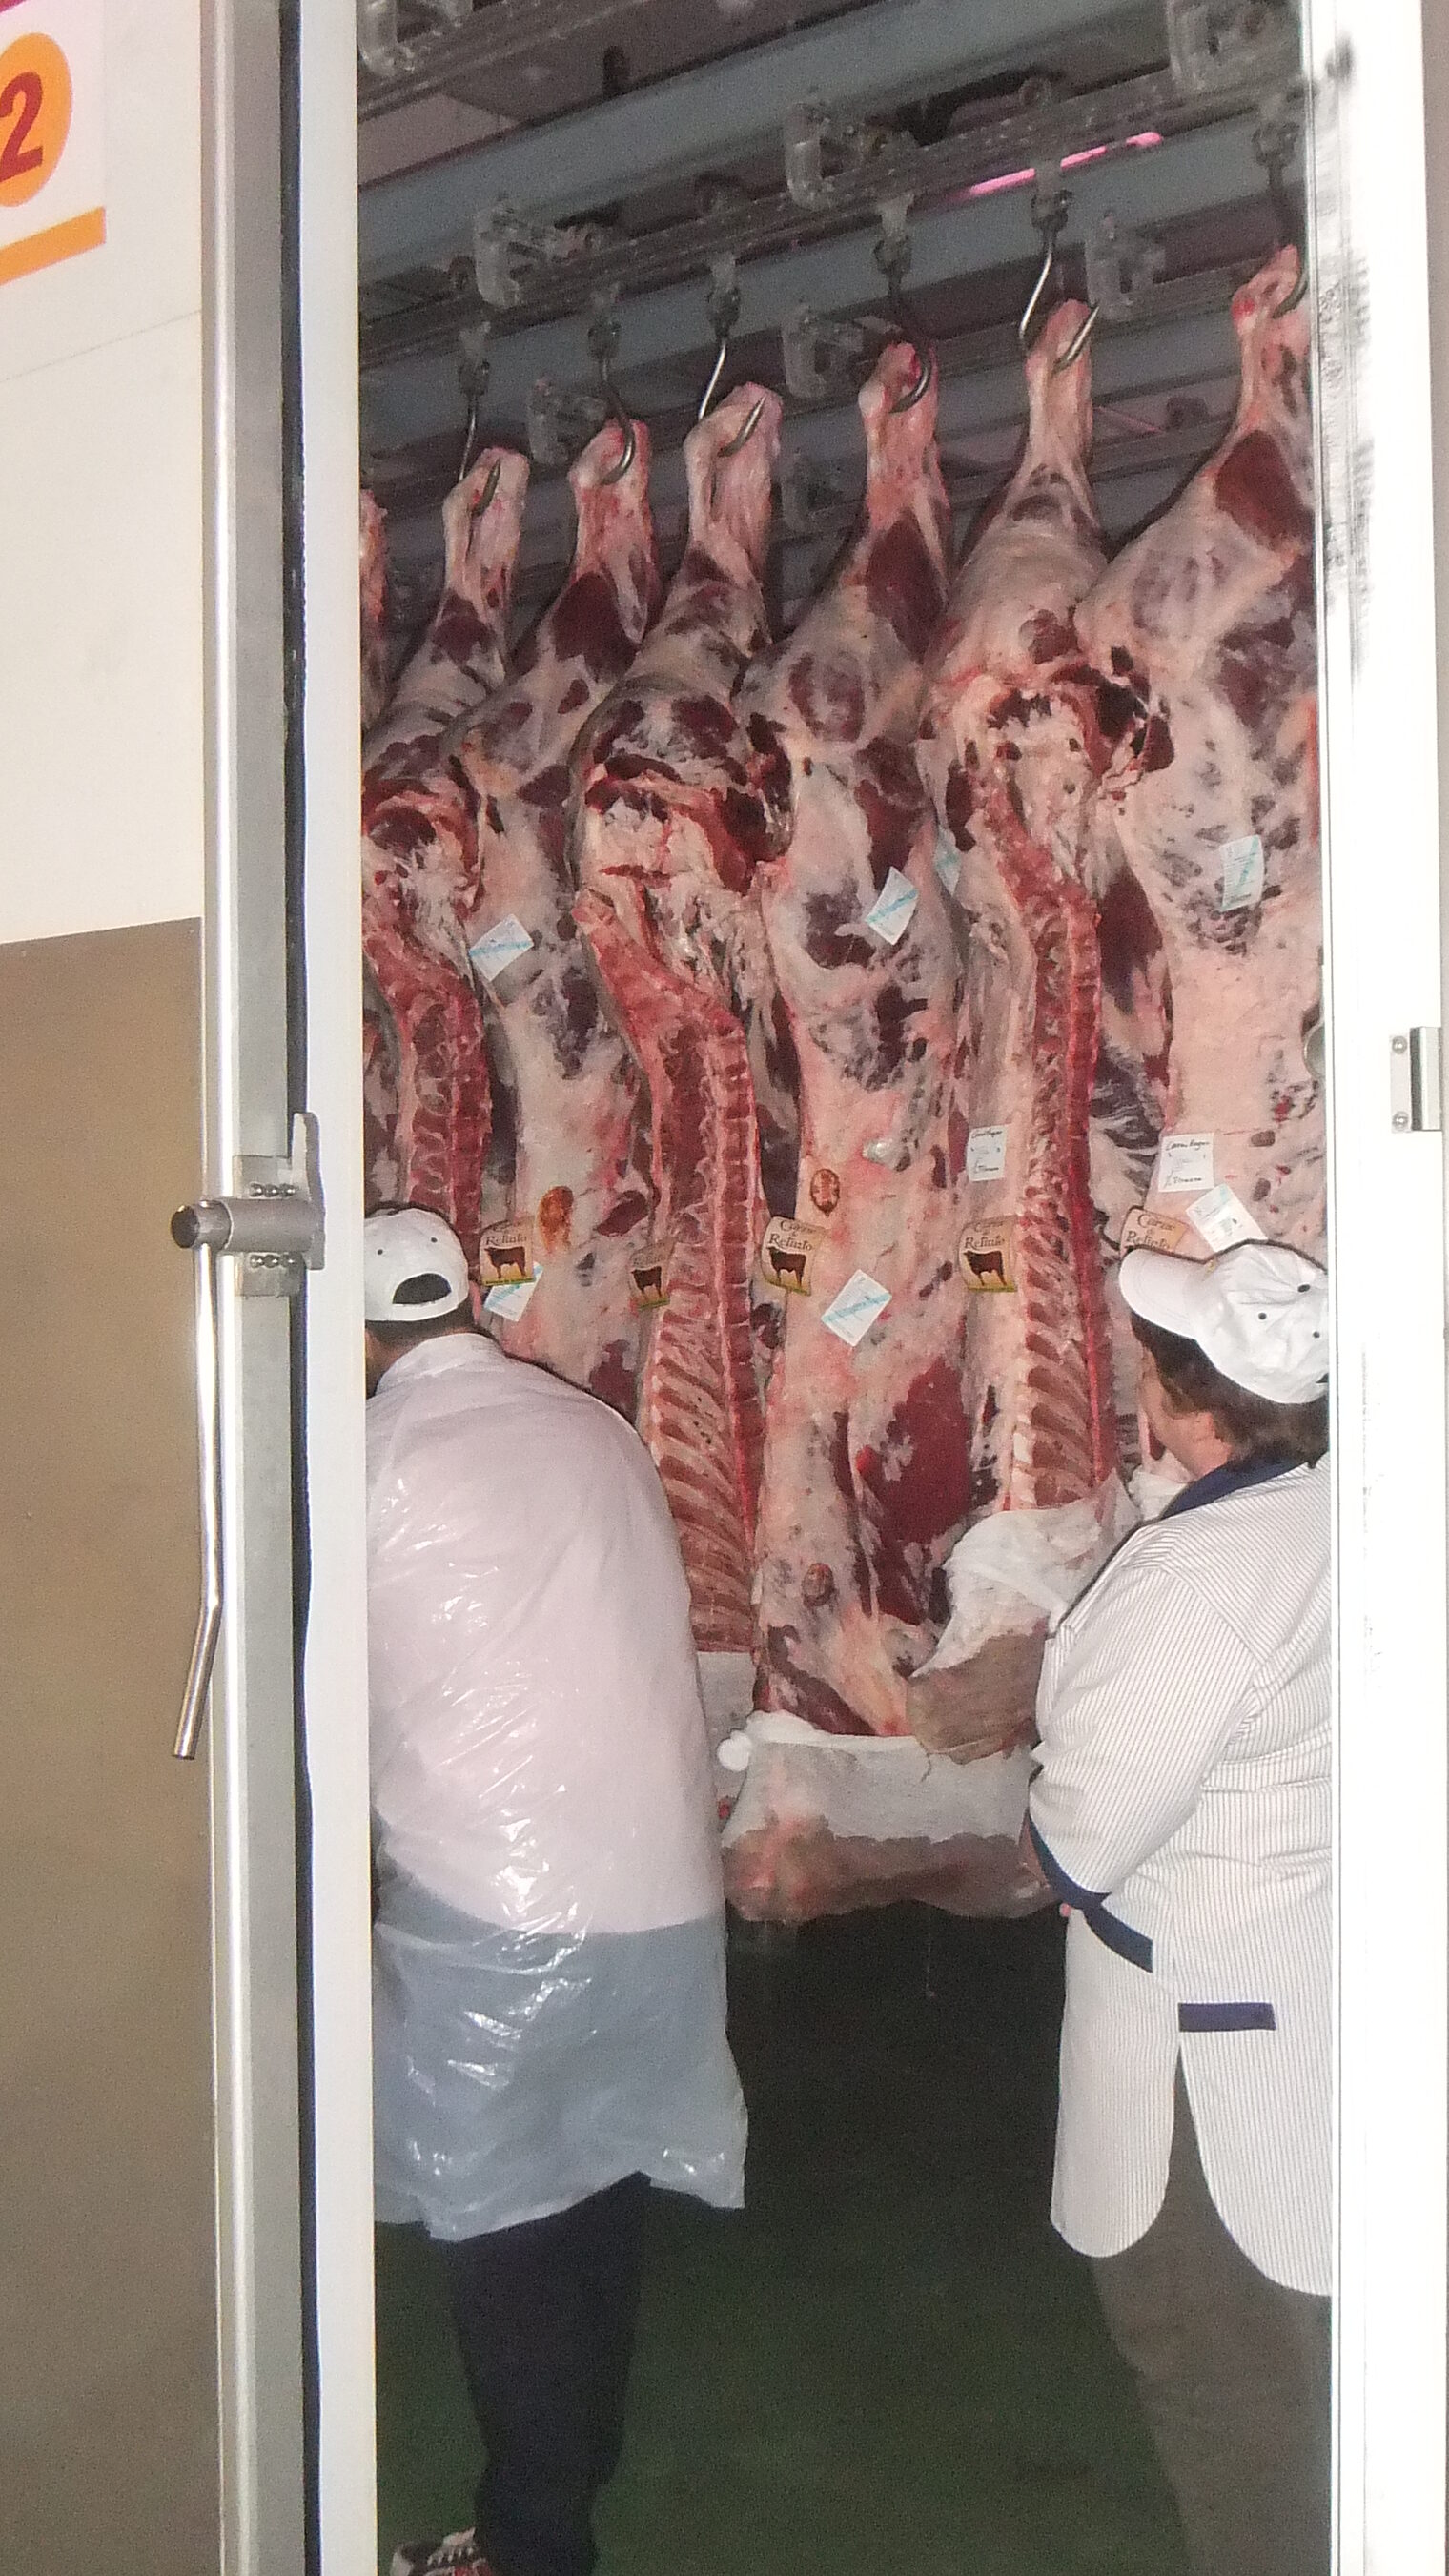 Vom 4. bis zum 7. November 2014 nahmen fünf Fleischerbetriebe und ein Schlachtbetrieb aus dem Kammerbezirk Potsdam am transnationalen Erfahrungsaustausch in Andalusien/Spanien teil.